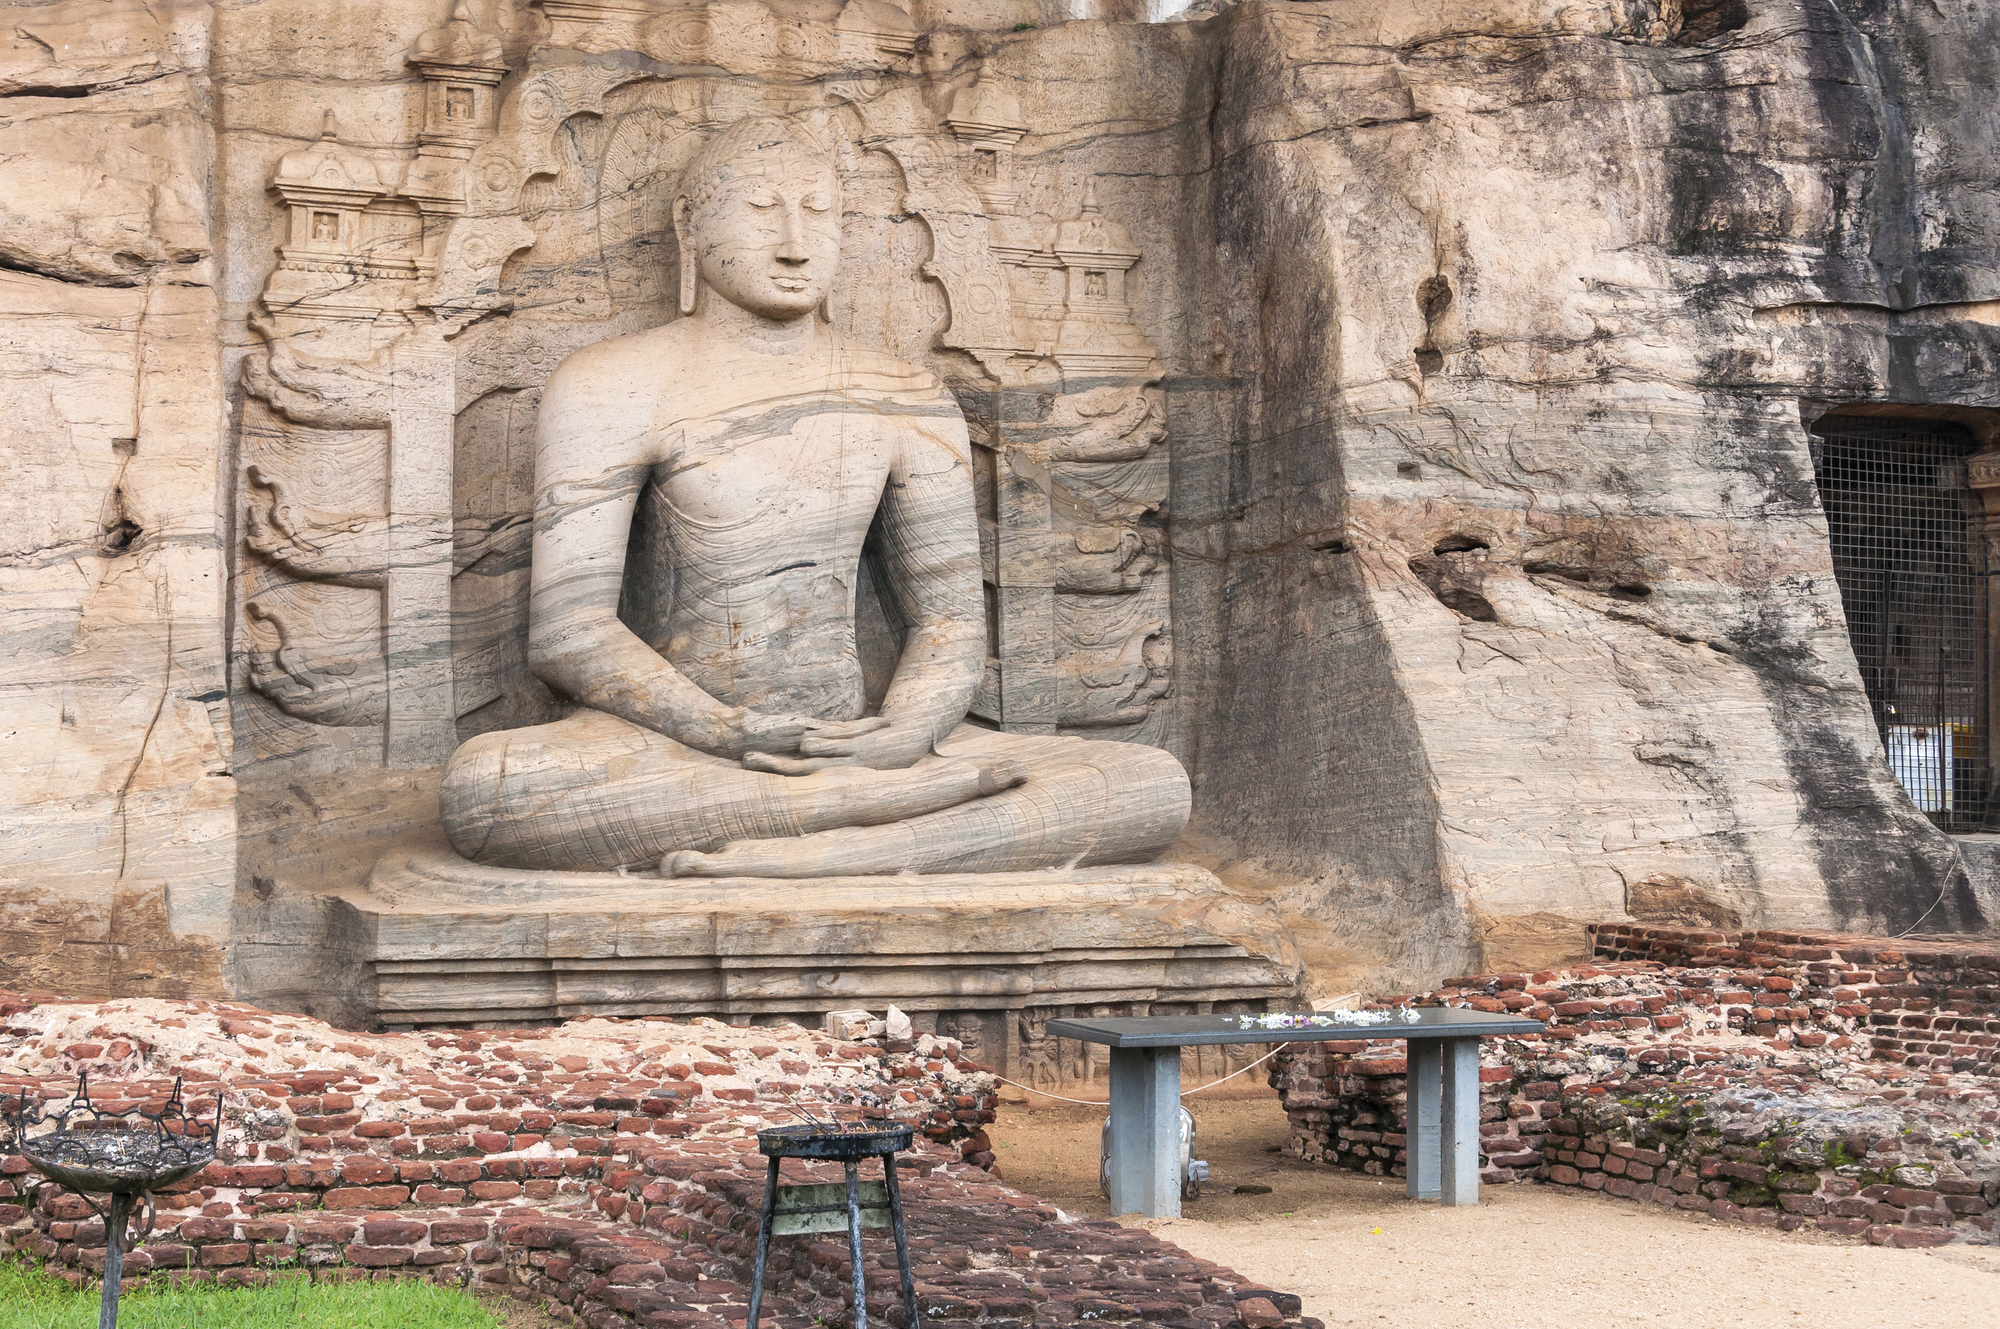 Samadhi Buddha-Statue in Pollonaruwa, Sri Lanka